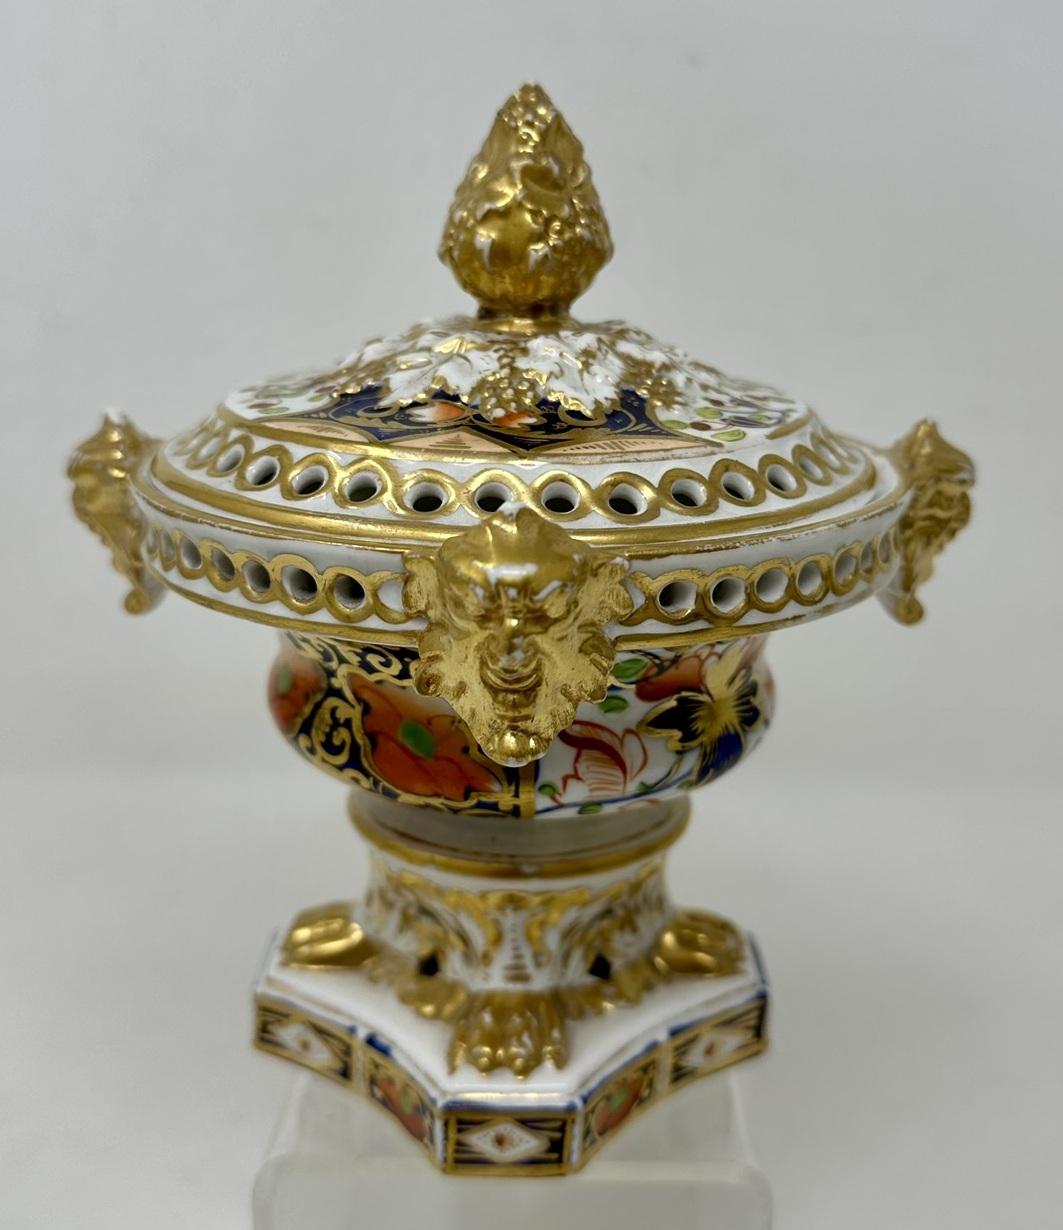 Ceramic Antique Regency English Crown Derby Pair Urns Vases Pot Pourri Centerpieces 1815 For Sale